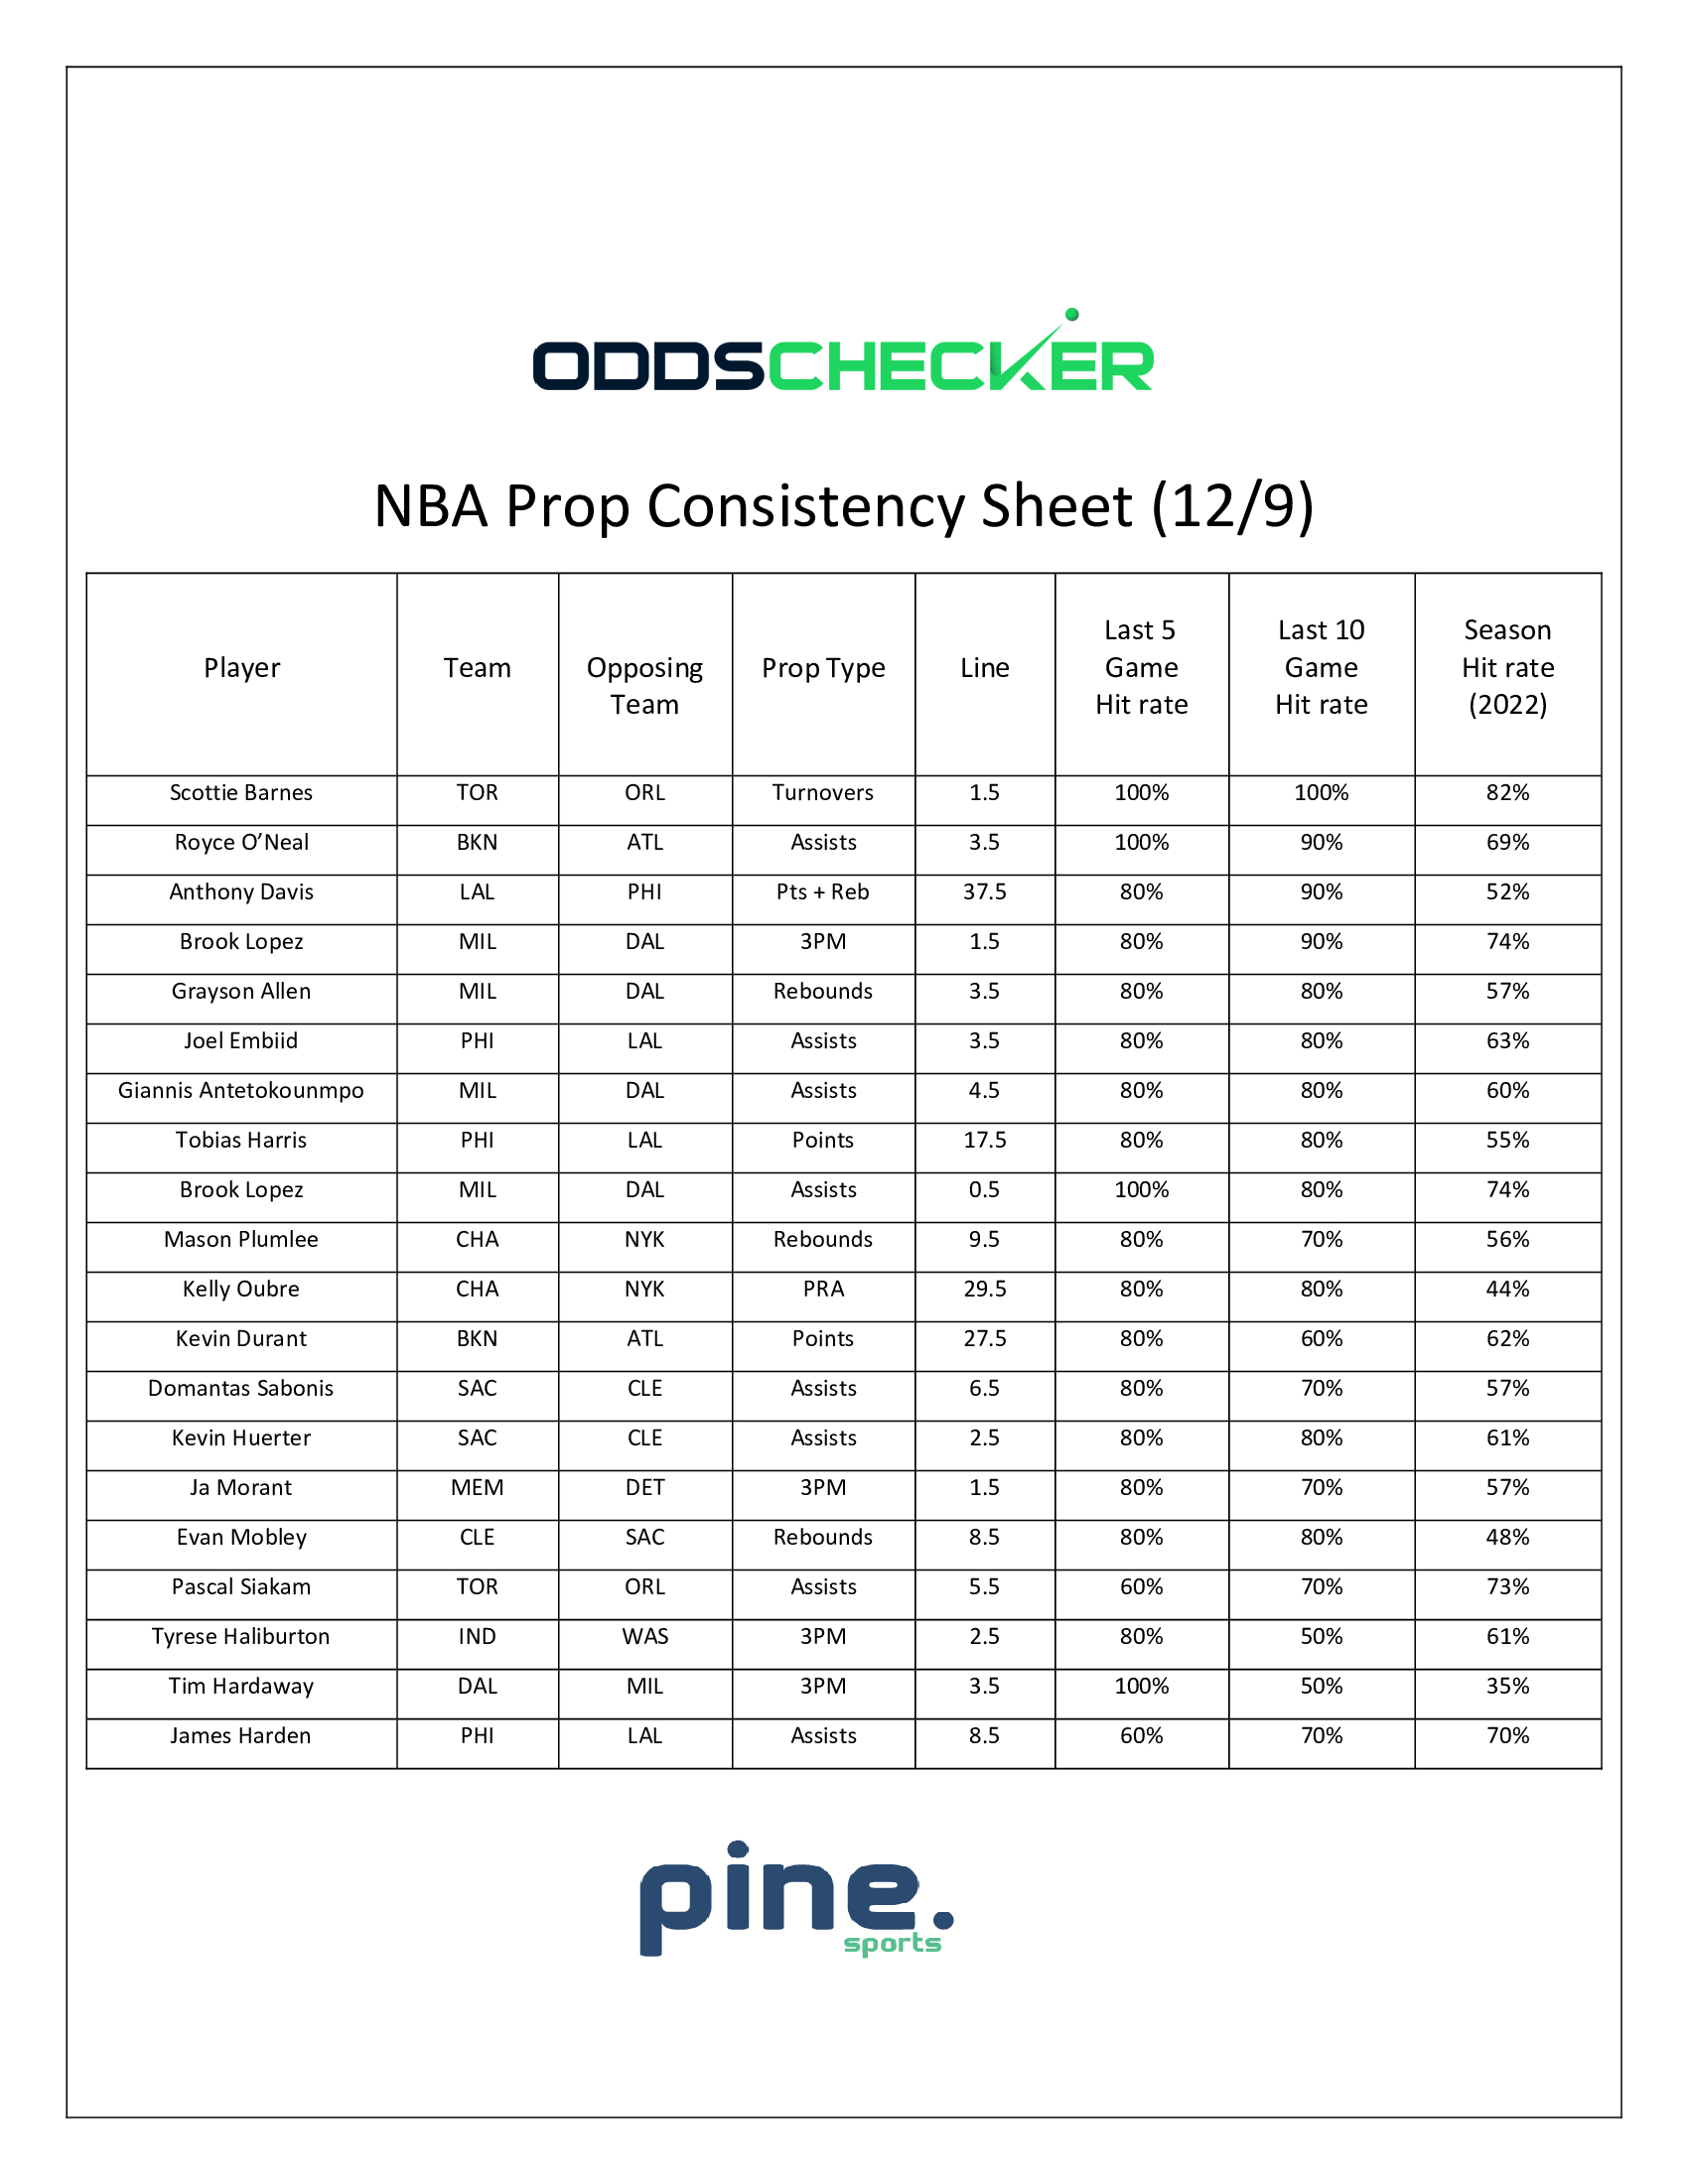 BMatt-NBA-Prop-Consistency-Sheet-12.9